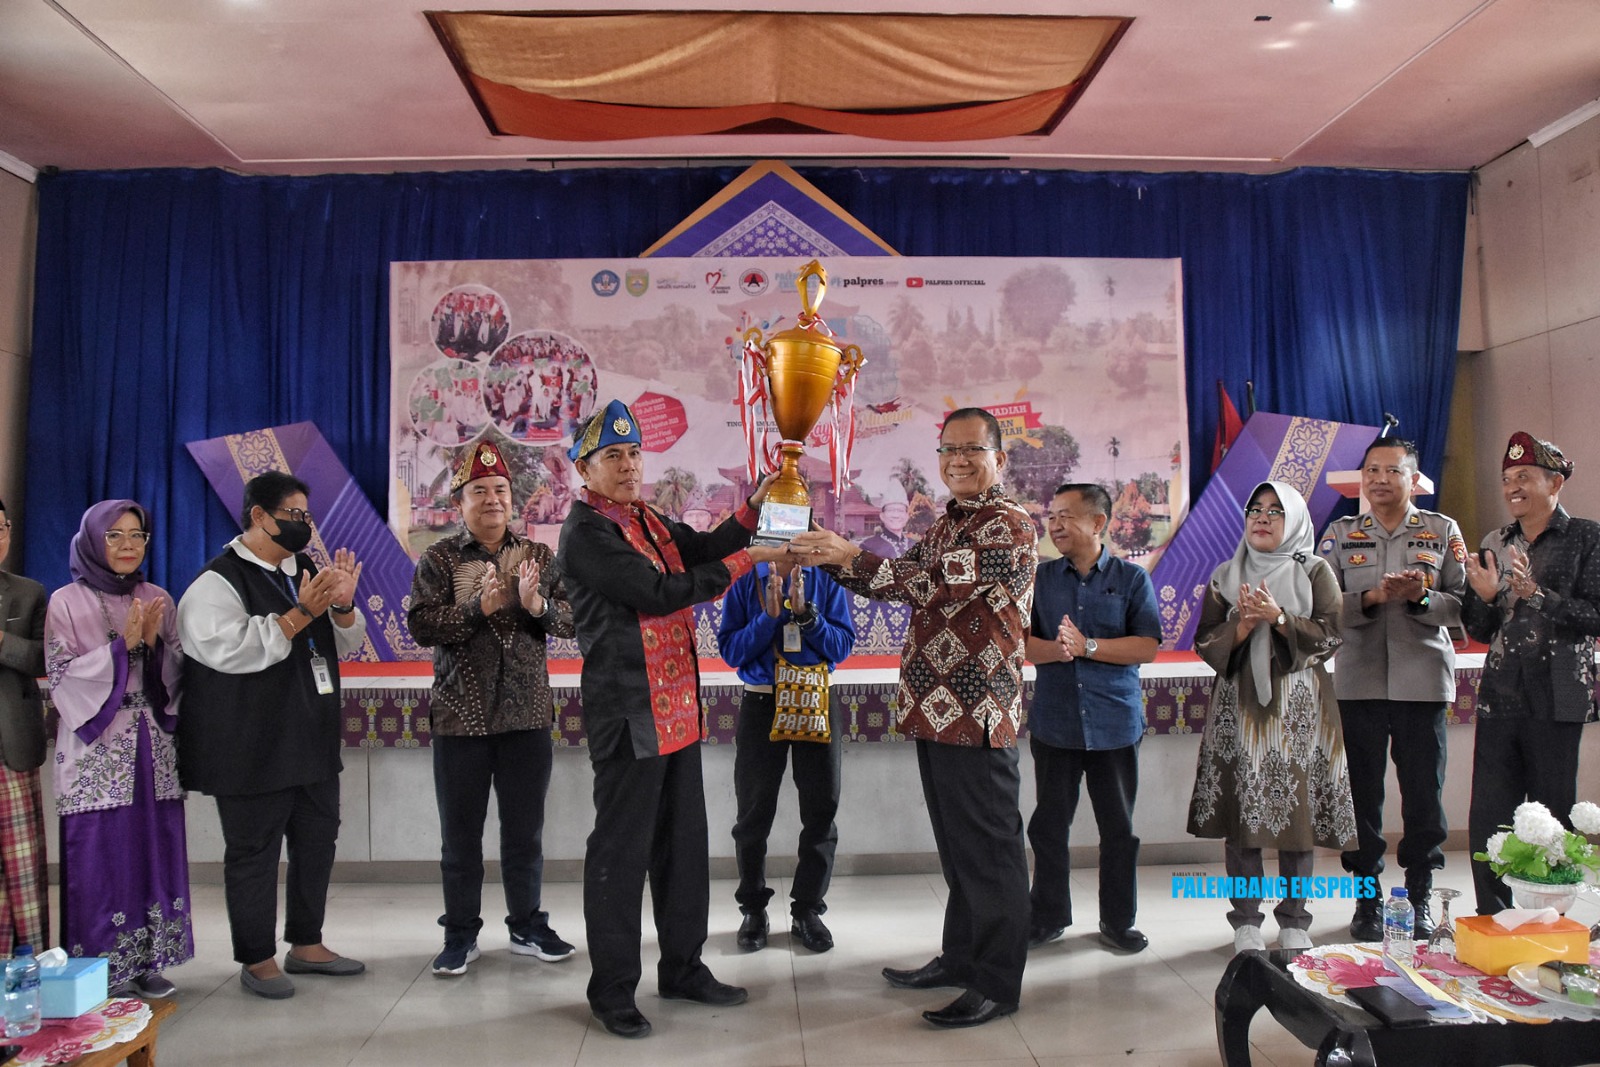 SMAN 6 Palembang Optimis Rebut Kembali Juara Umum Sang Juara 'Payo ke Museum'